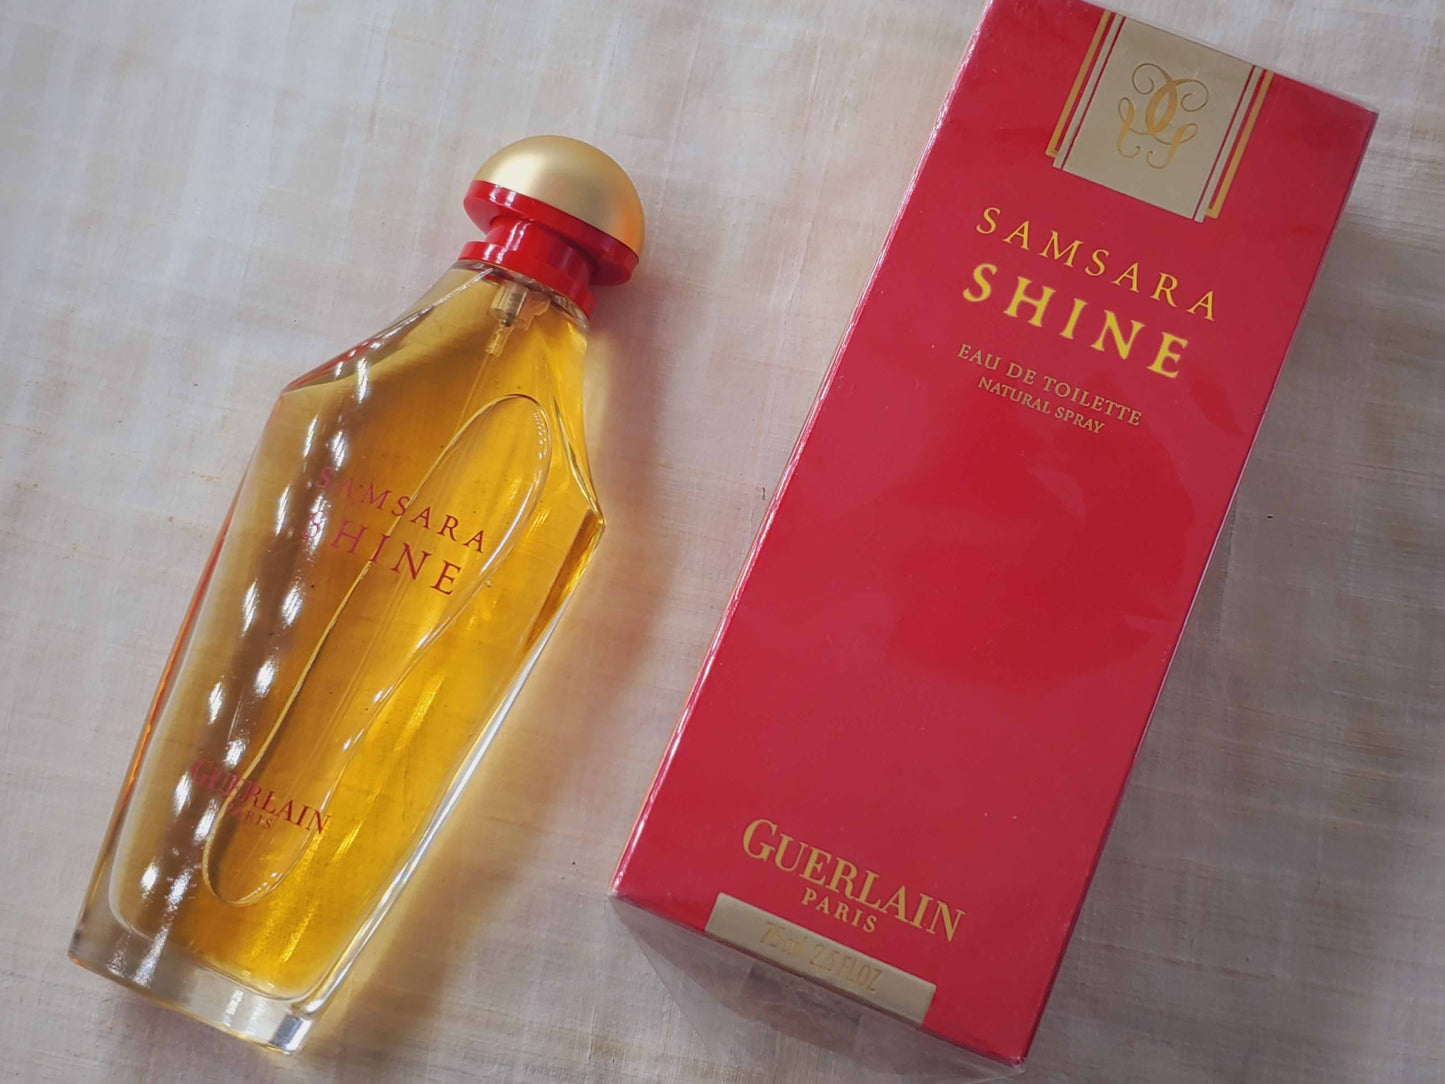 Samsara Shine Guerlain for women EDT Spray 75 ml 2.5 oz, Rare, Vintage